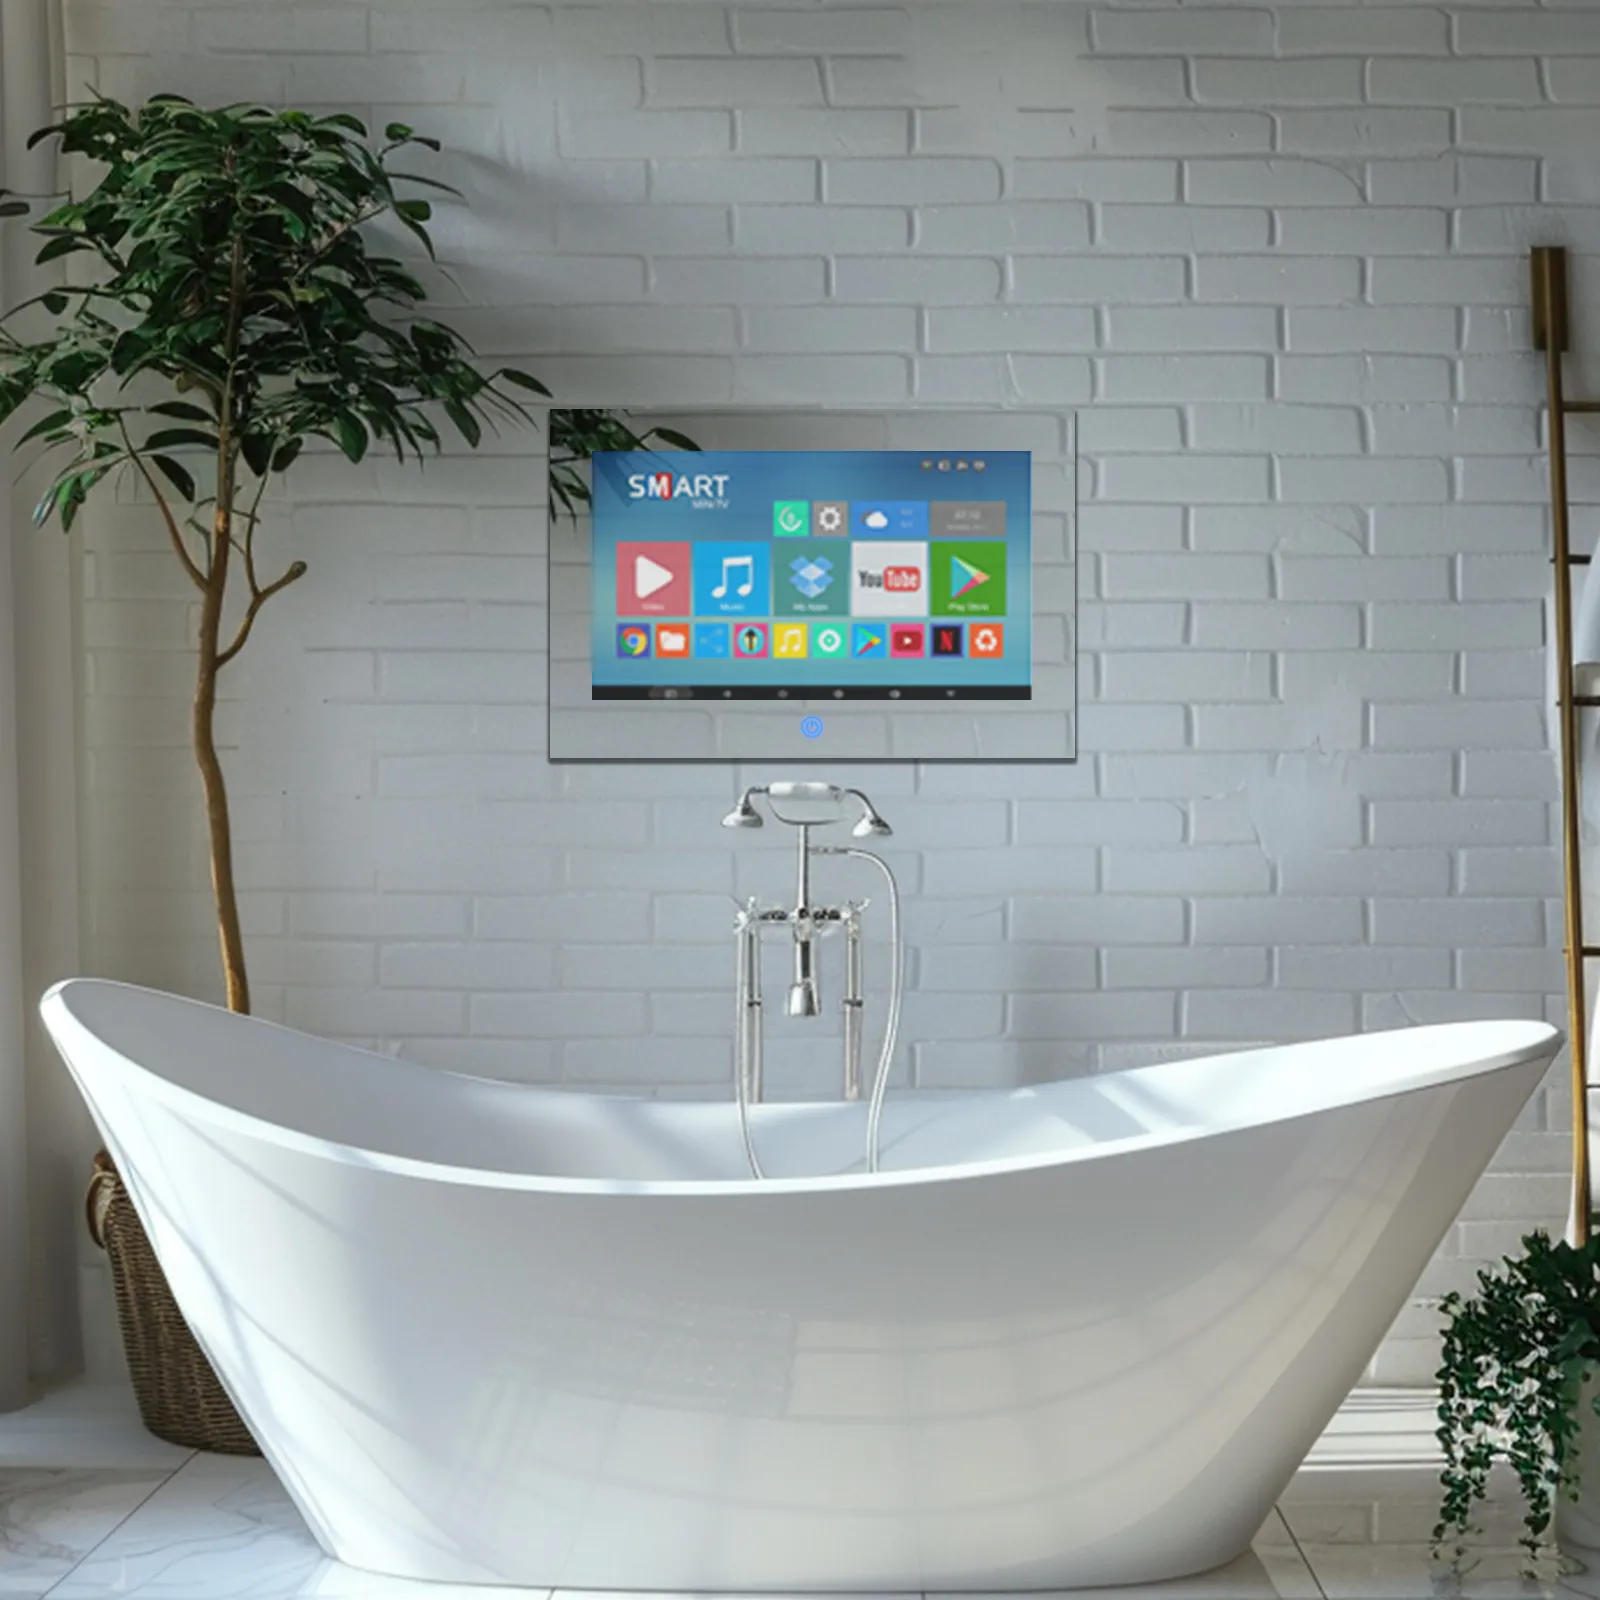 Smart tv espelhada para banheiro, tv espelhada de 22 polegadas com tela sensível ao toque HDTV à prova d'água para uso interno e externo, HD Smart